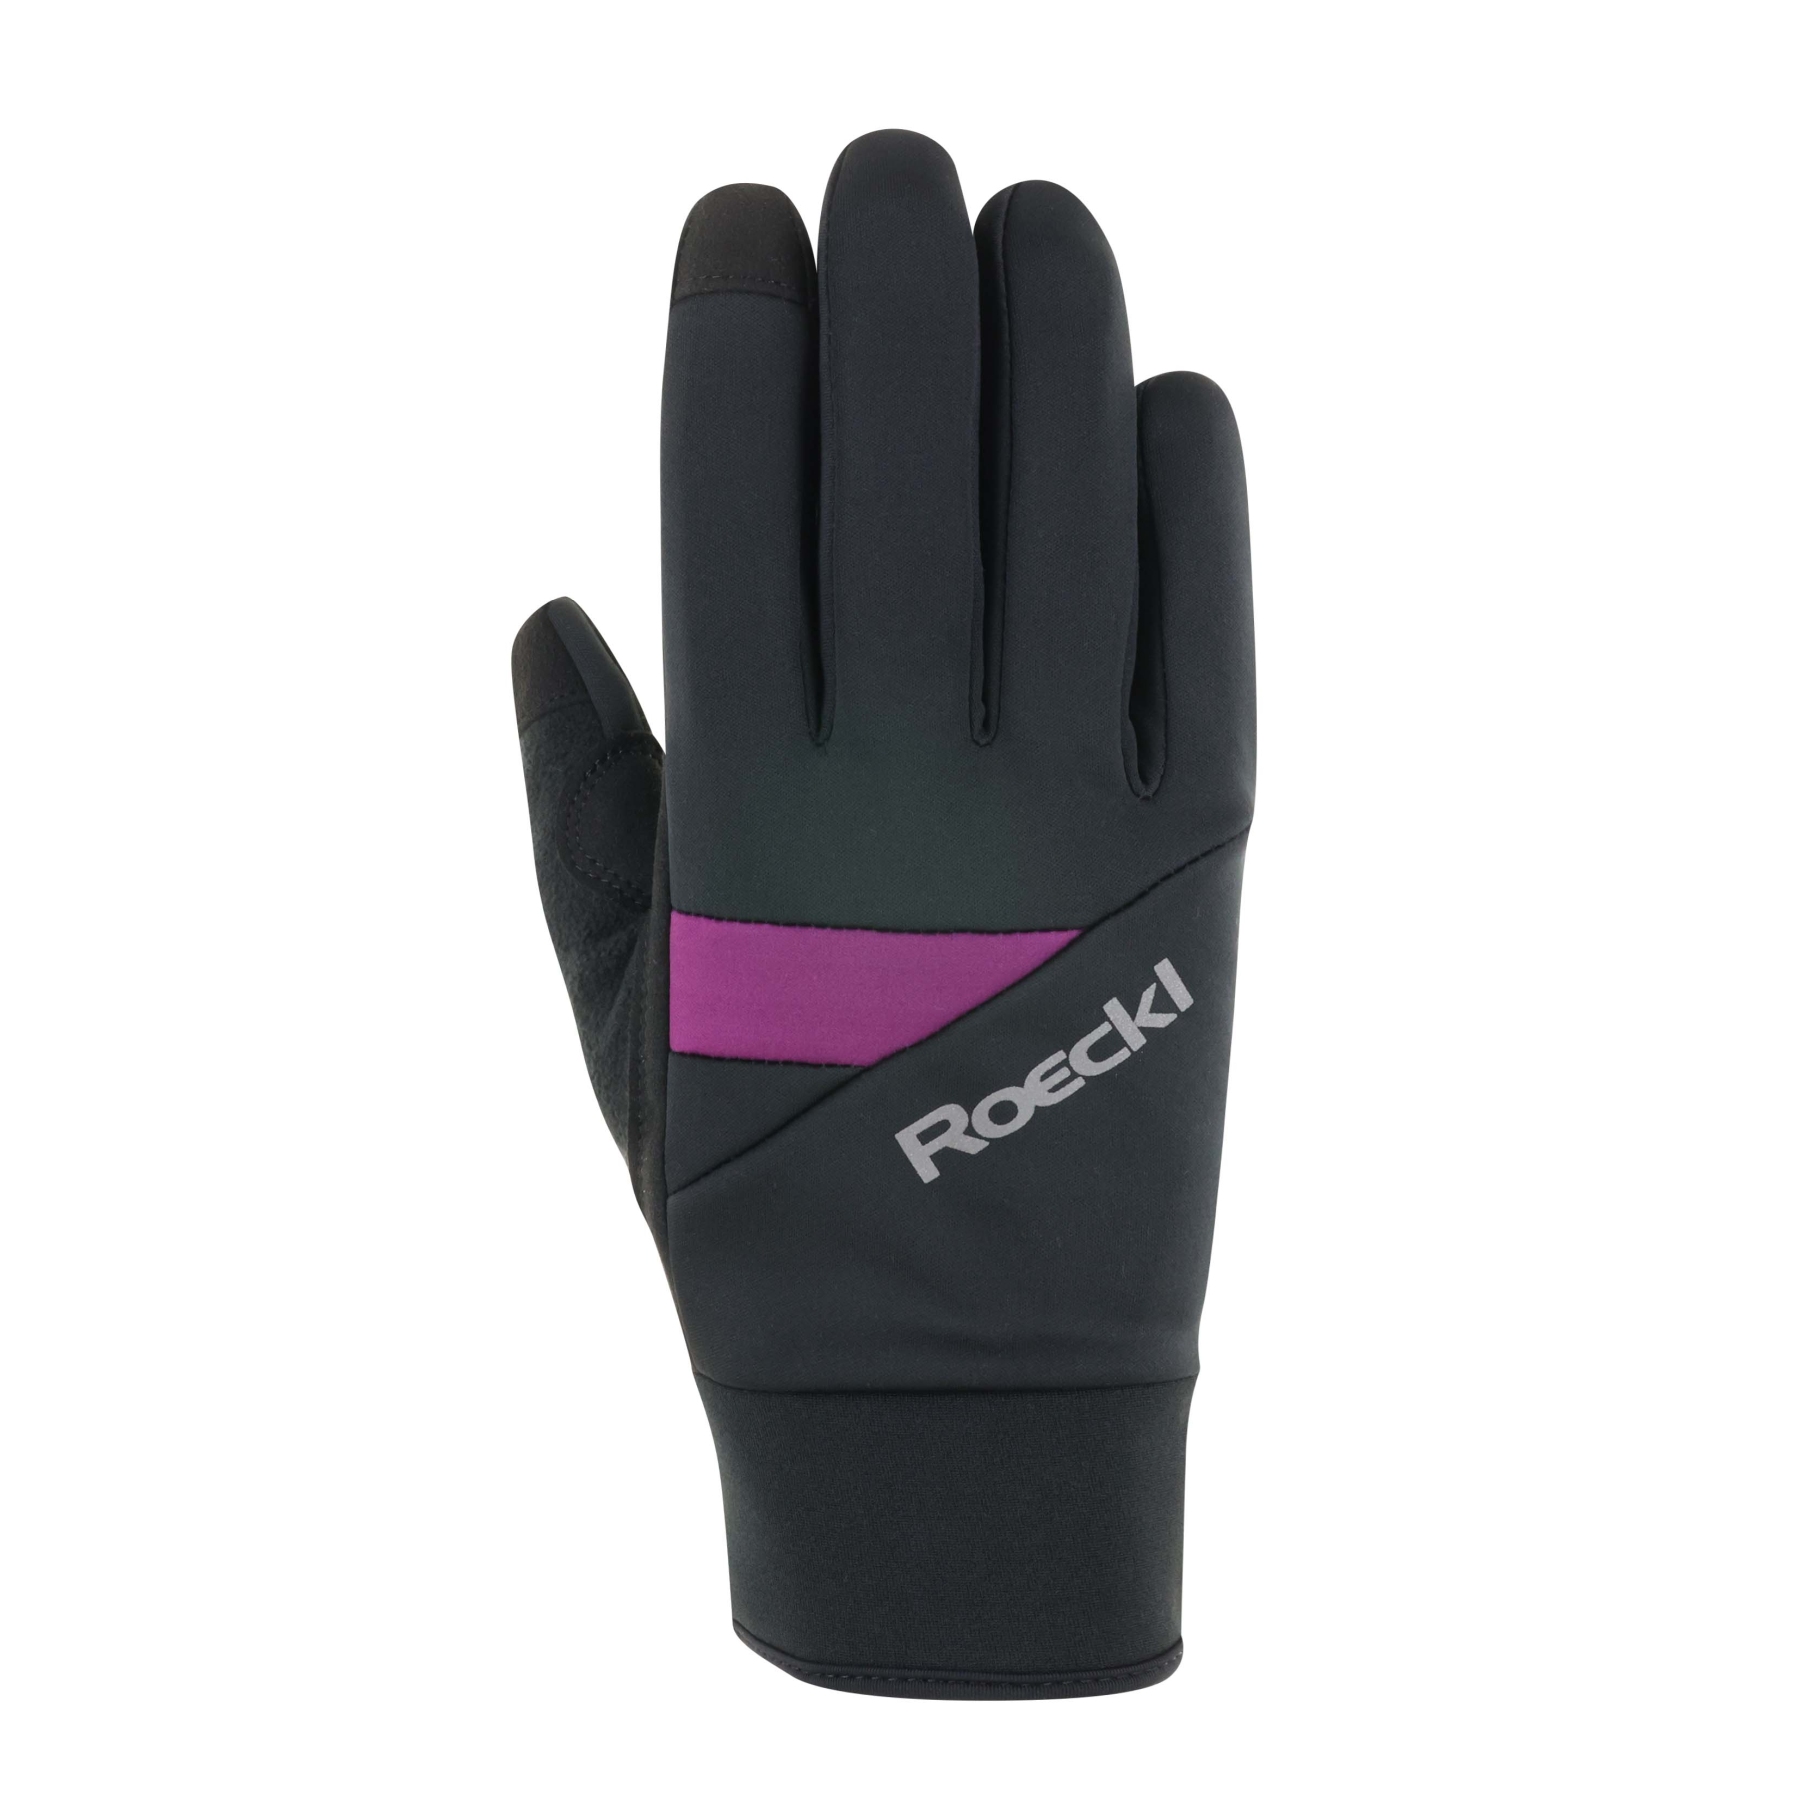 Produktbild von Roeckl Sports Reichenthal Fahrradhandschuhe - black/purple 9461